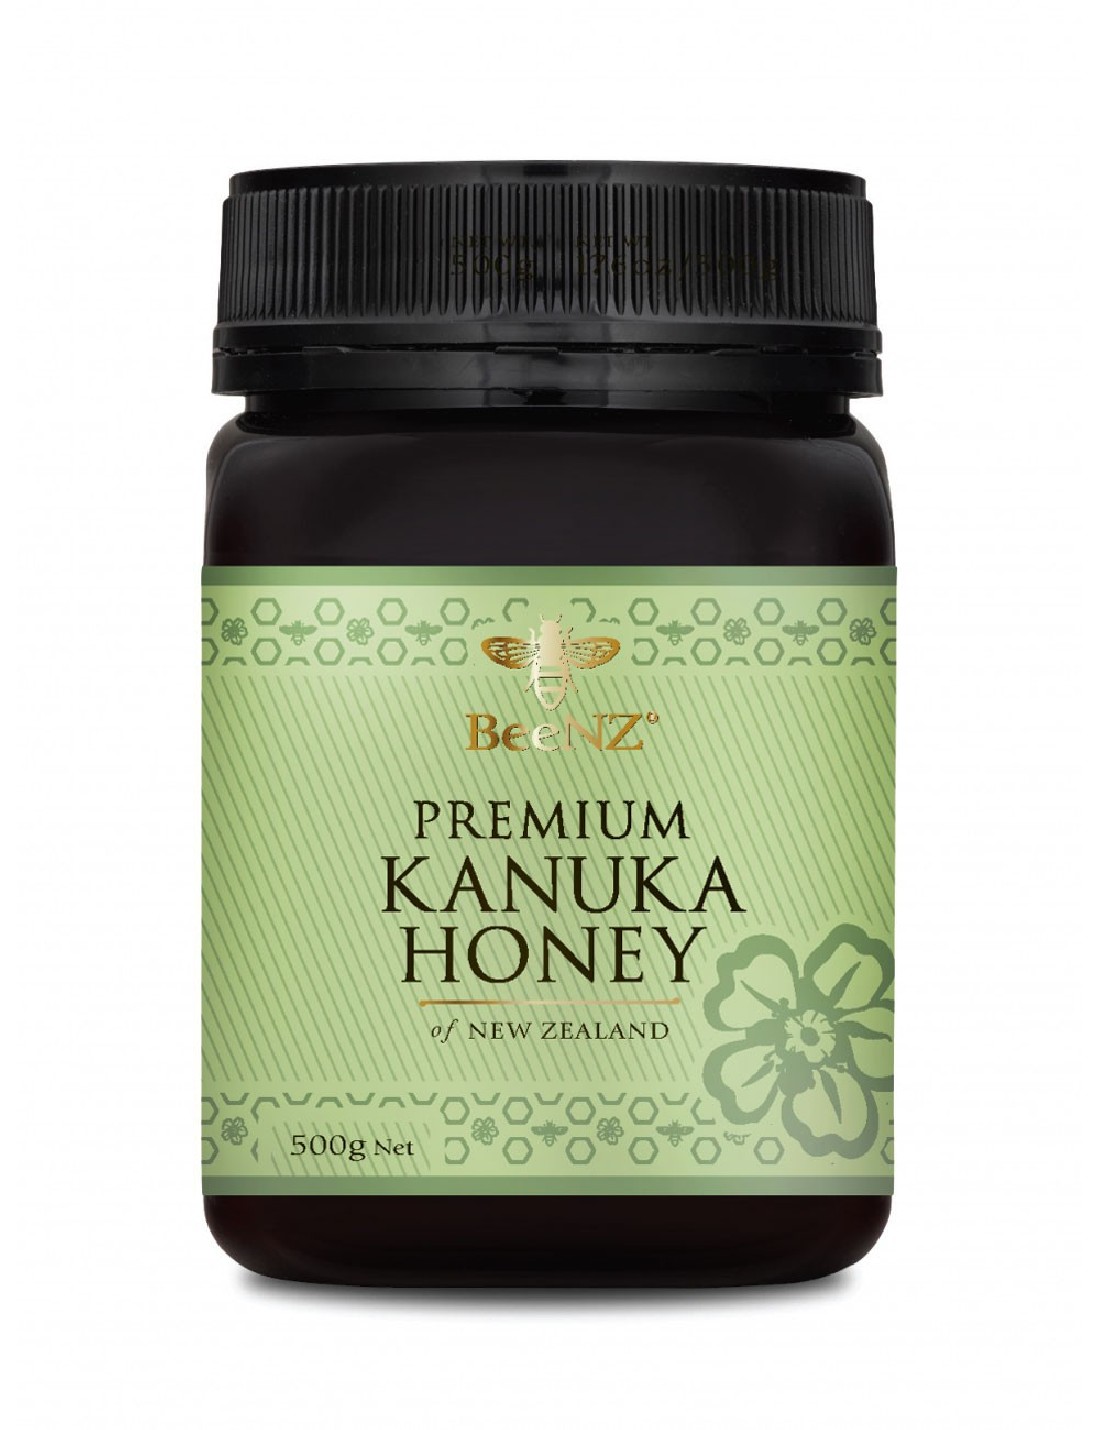 Miele di Kanuka certificato. Miele Antibatterico con proprietà benefiche.